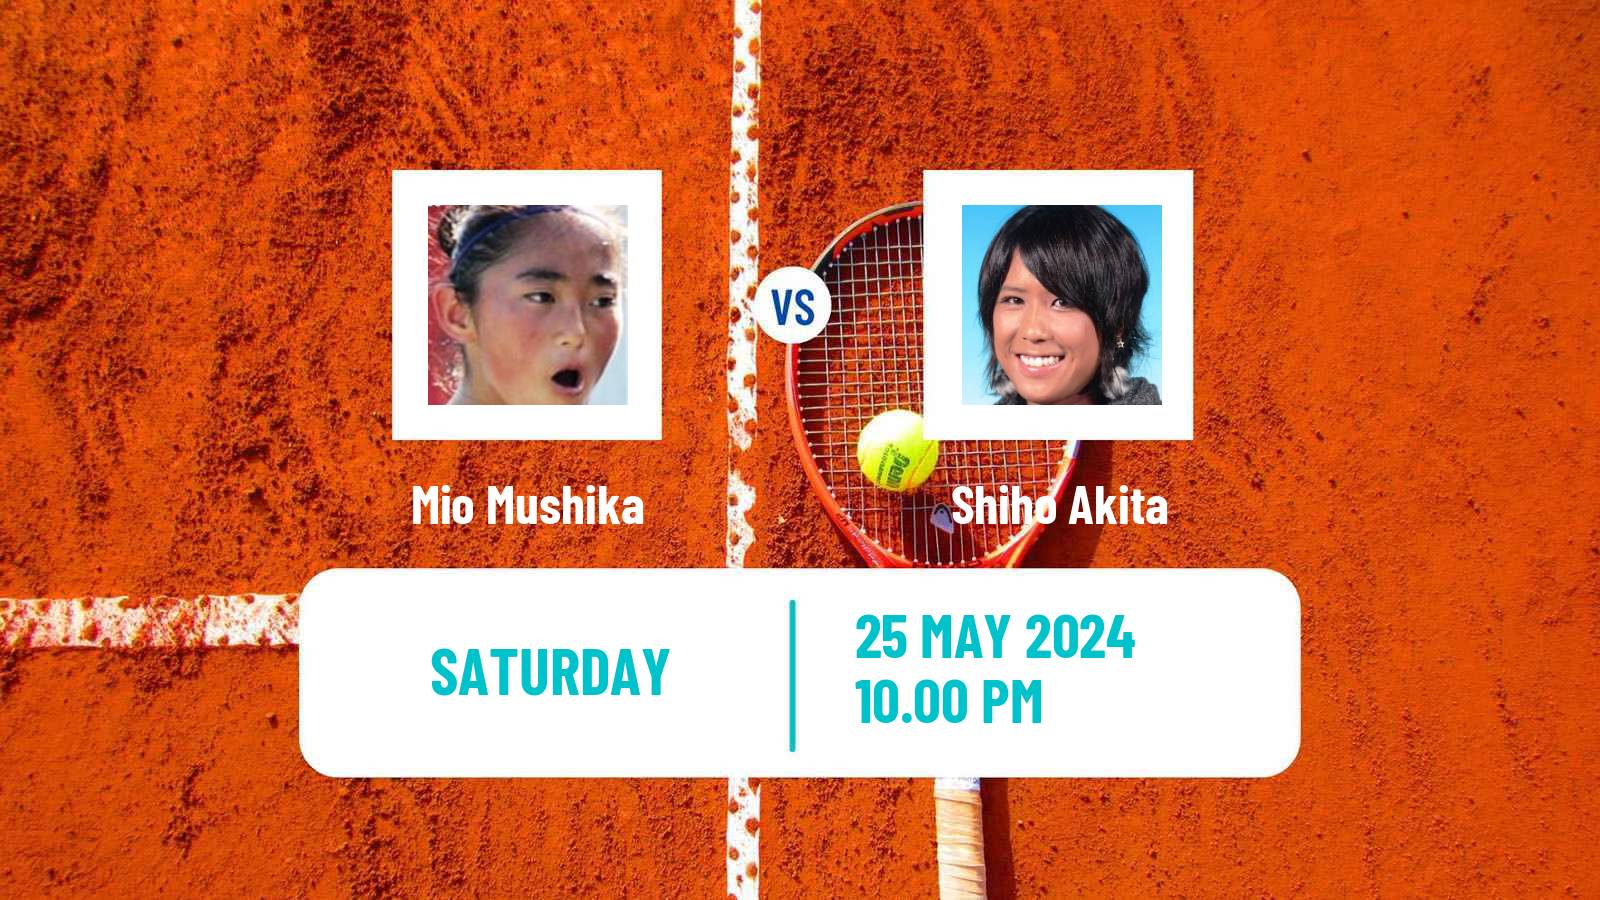 Tennis ITF W15 Fukui Women Mio Mushika - Shiho Akita